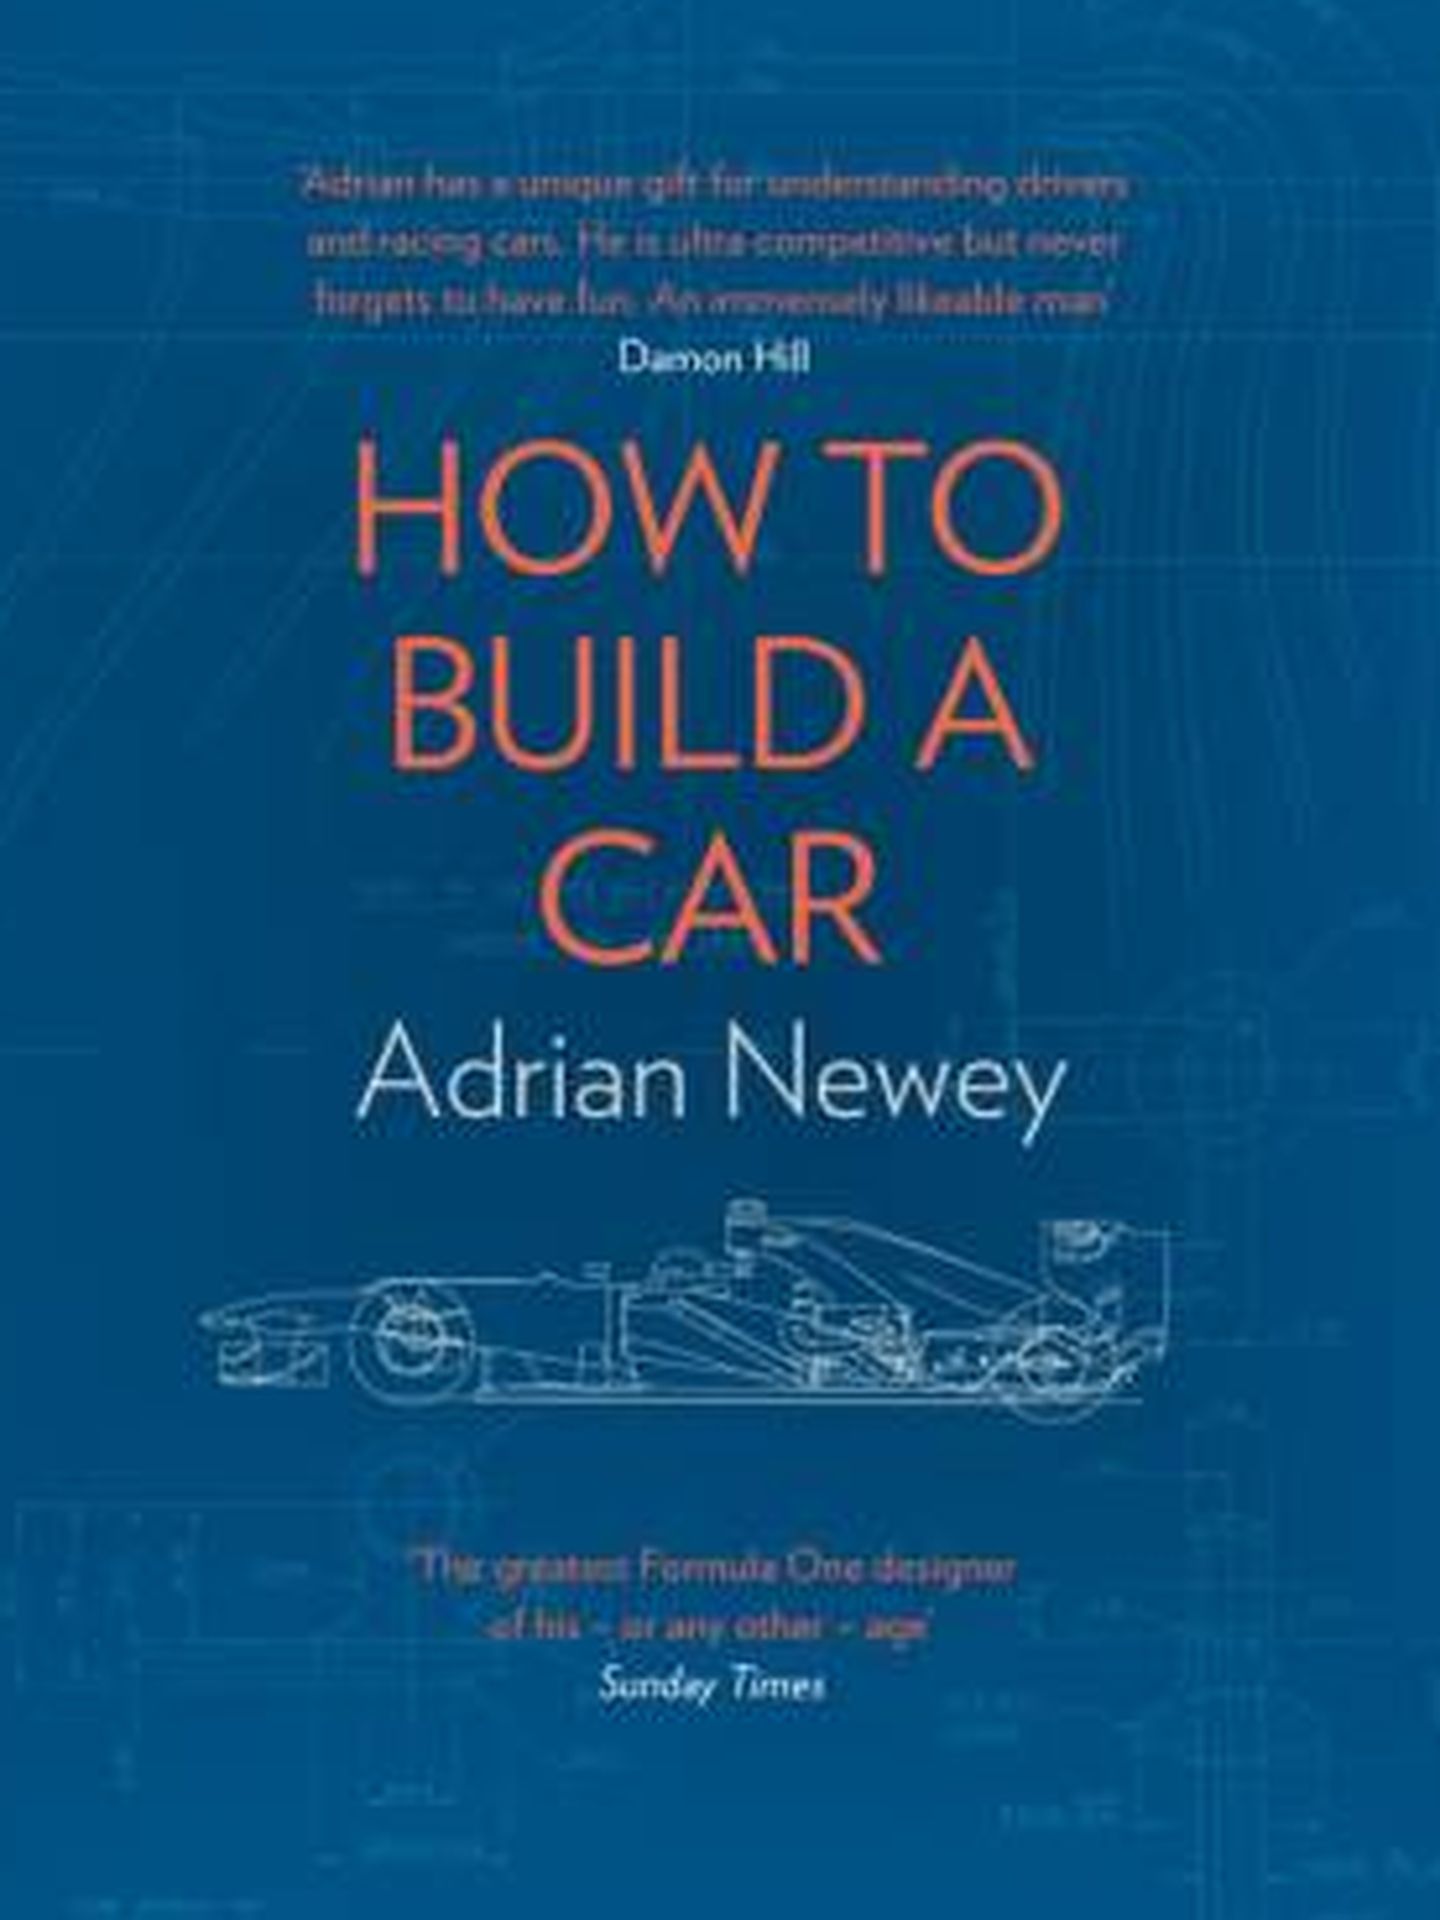 Portada del libro de Adrian Newey 'How To Build a Car' (Cómo construir un coche).